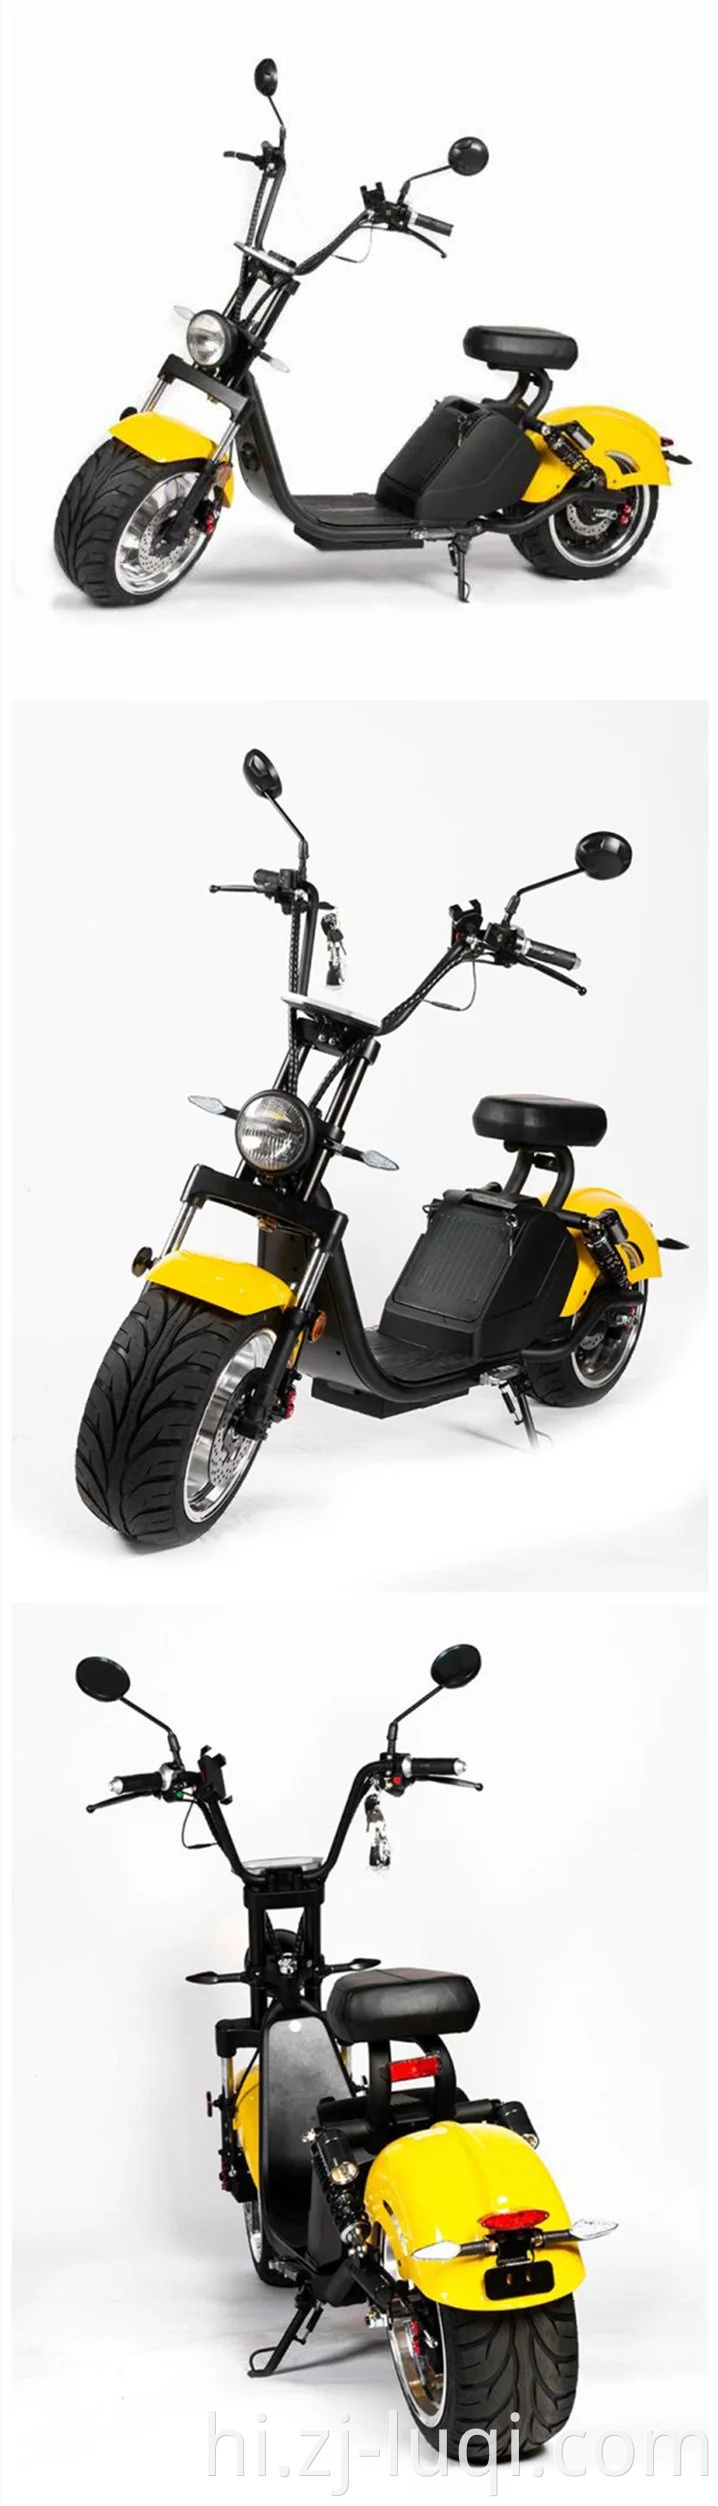 थोक सर्वश्रेष्ठ खरीदें 2020 नई मोटरसाइकिल ईईसी फैट टायर 1500W / 3000W सिटीकोको एडल्ट चॉपर स्कूटर इलेक्ट्रिक